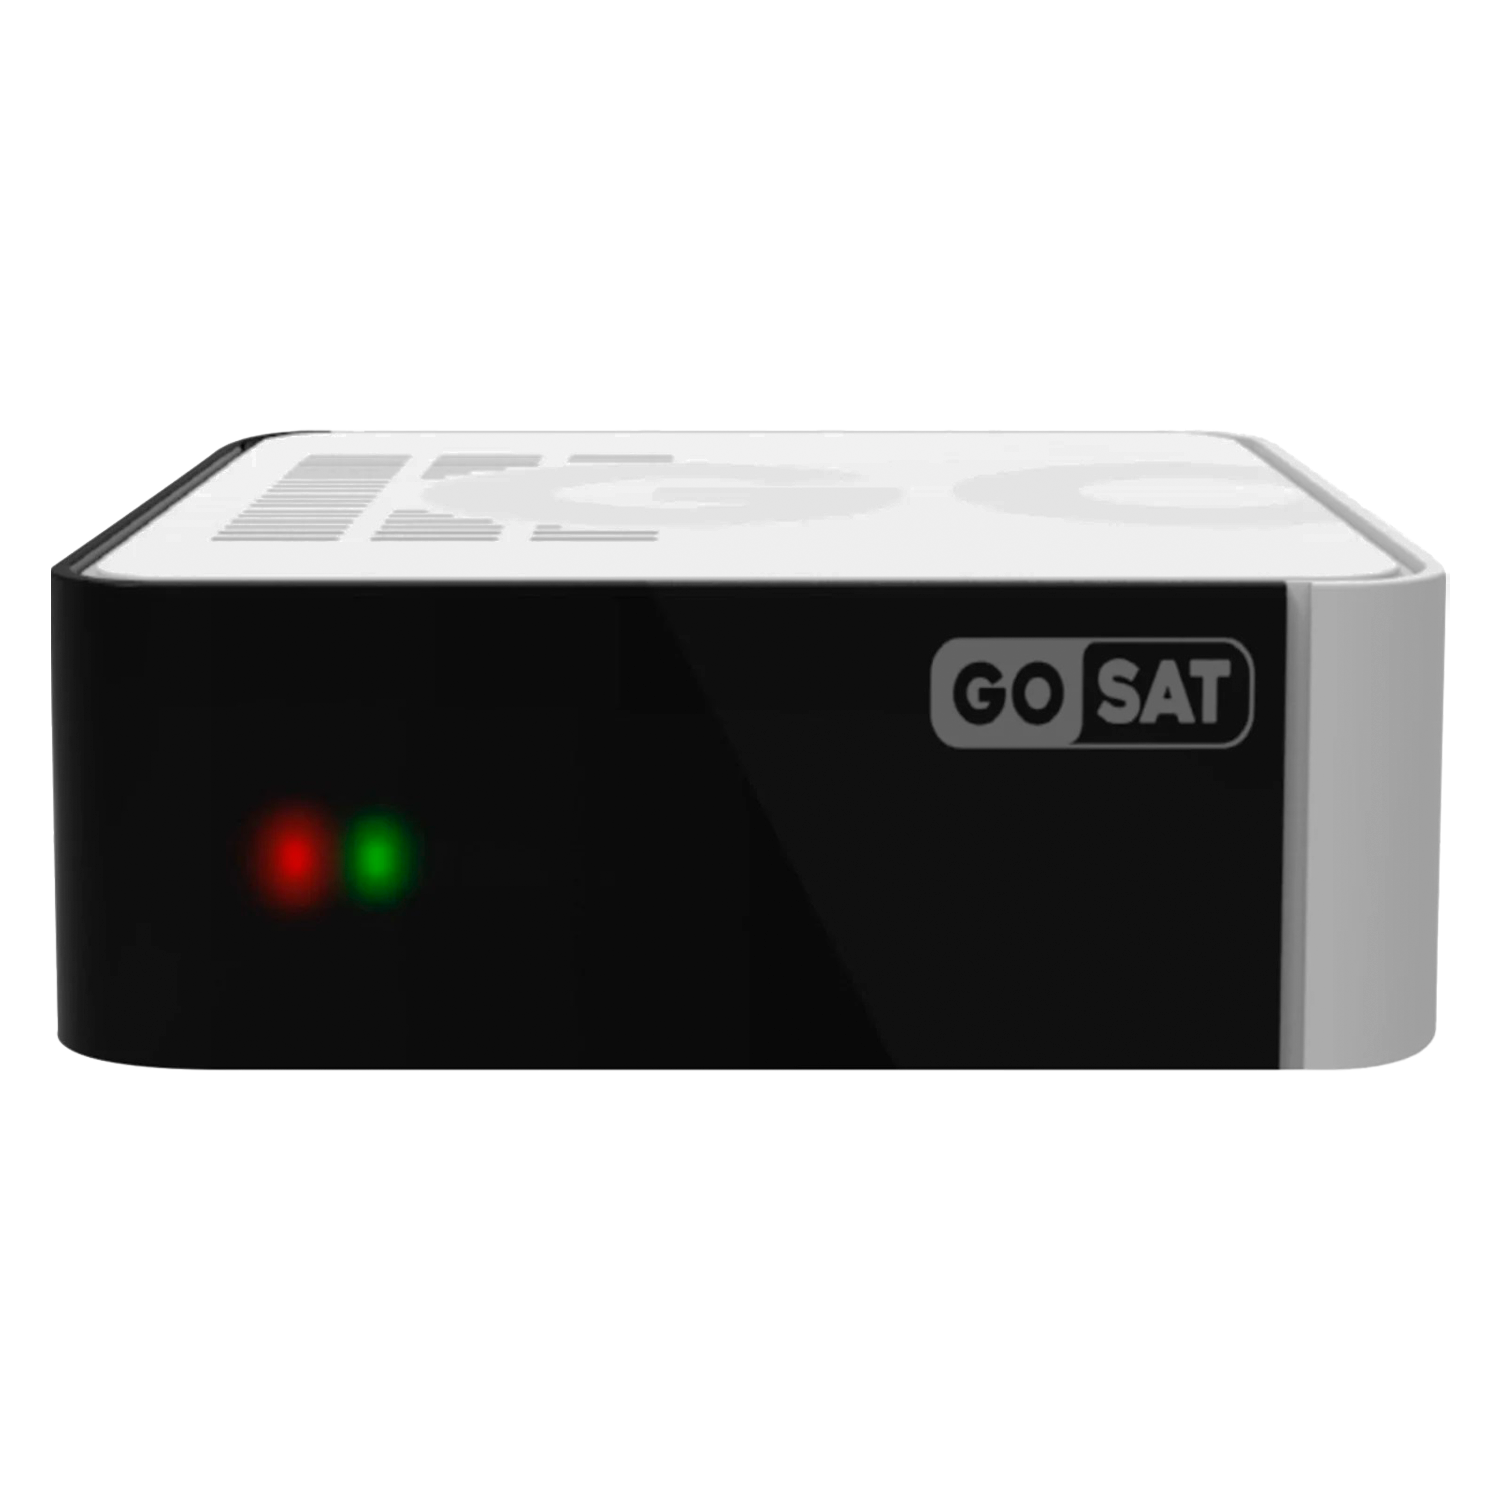 Receptor Gosat S1 Full HD 8MB 256MB RAM Wi-Fi - Preto

